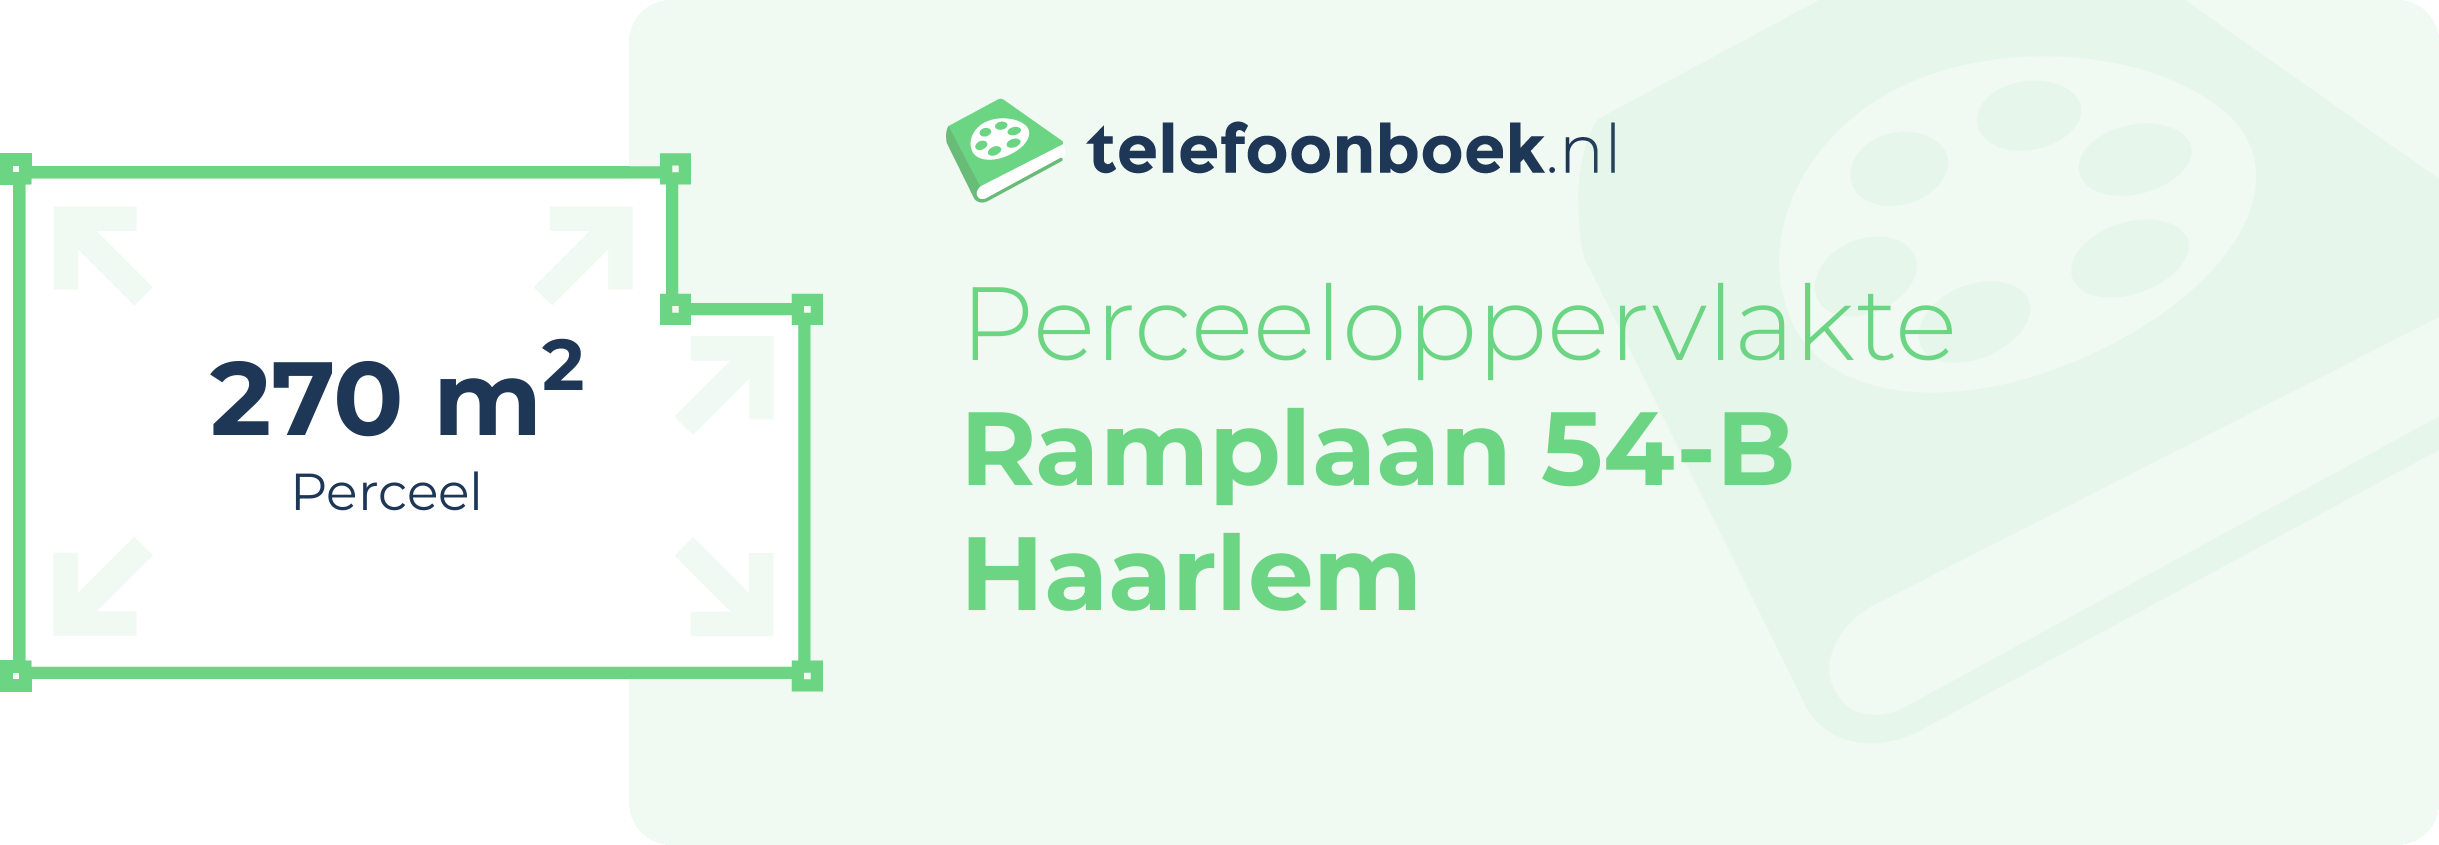 Perceeloppervlakte Ramplaan 54-B Haarlem